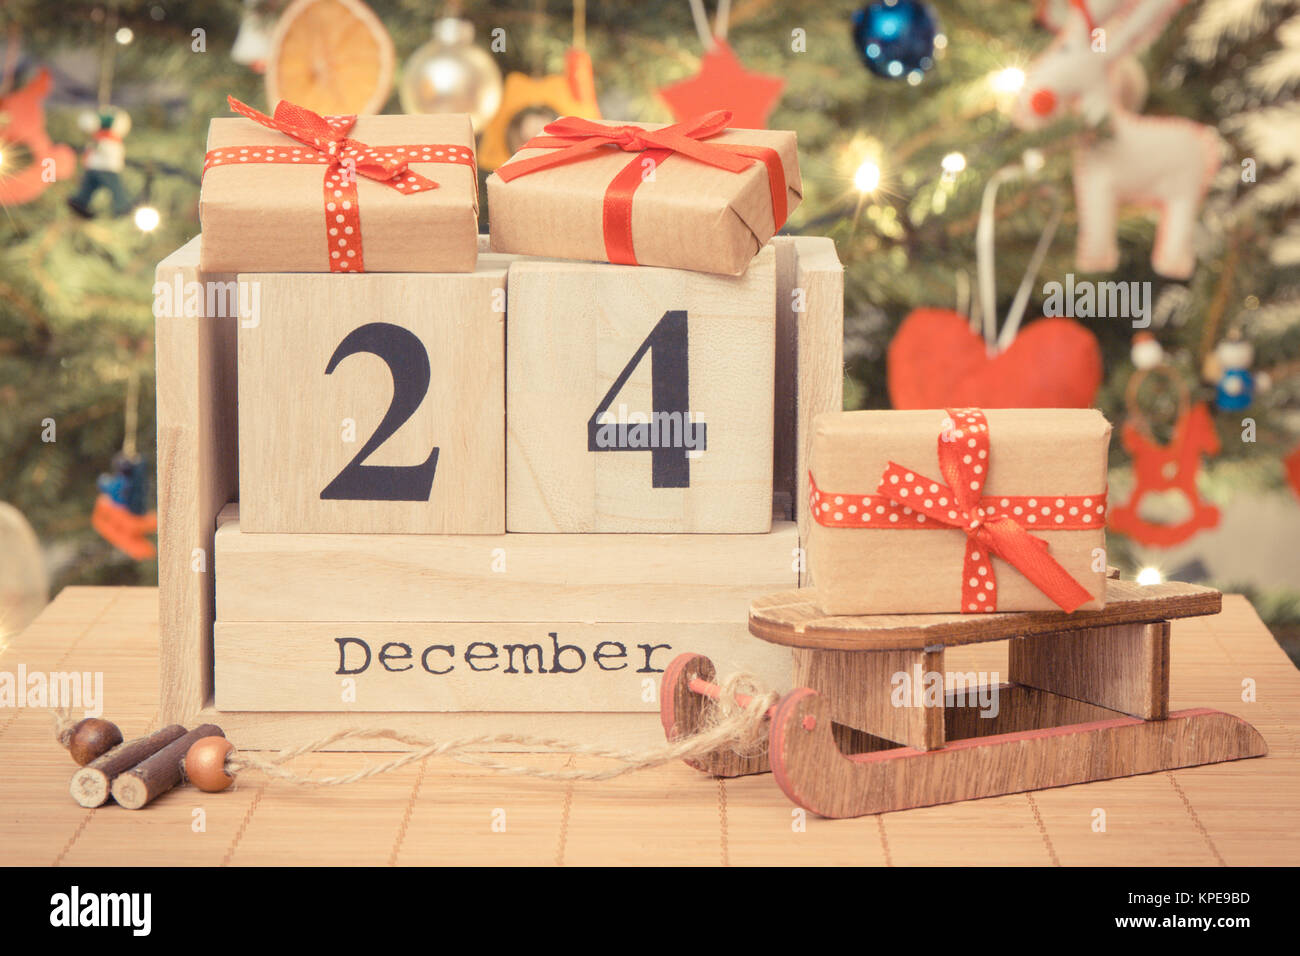 Vintage Foto, das Datum 24. Dezember auf cube Kalender, eingepackte  Geschenke mit Bändern und Christbaum mit Beleuchtung und Dekoration,  Heiligabend zeit Konzept Stockfotografie - Alamy